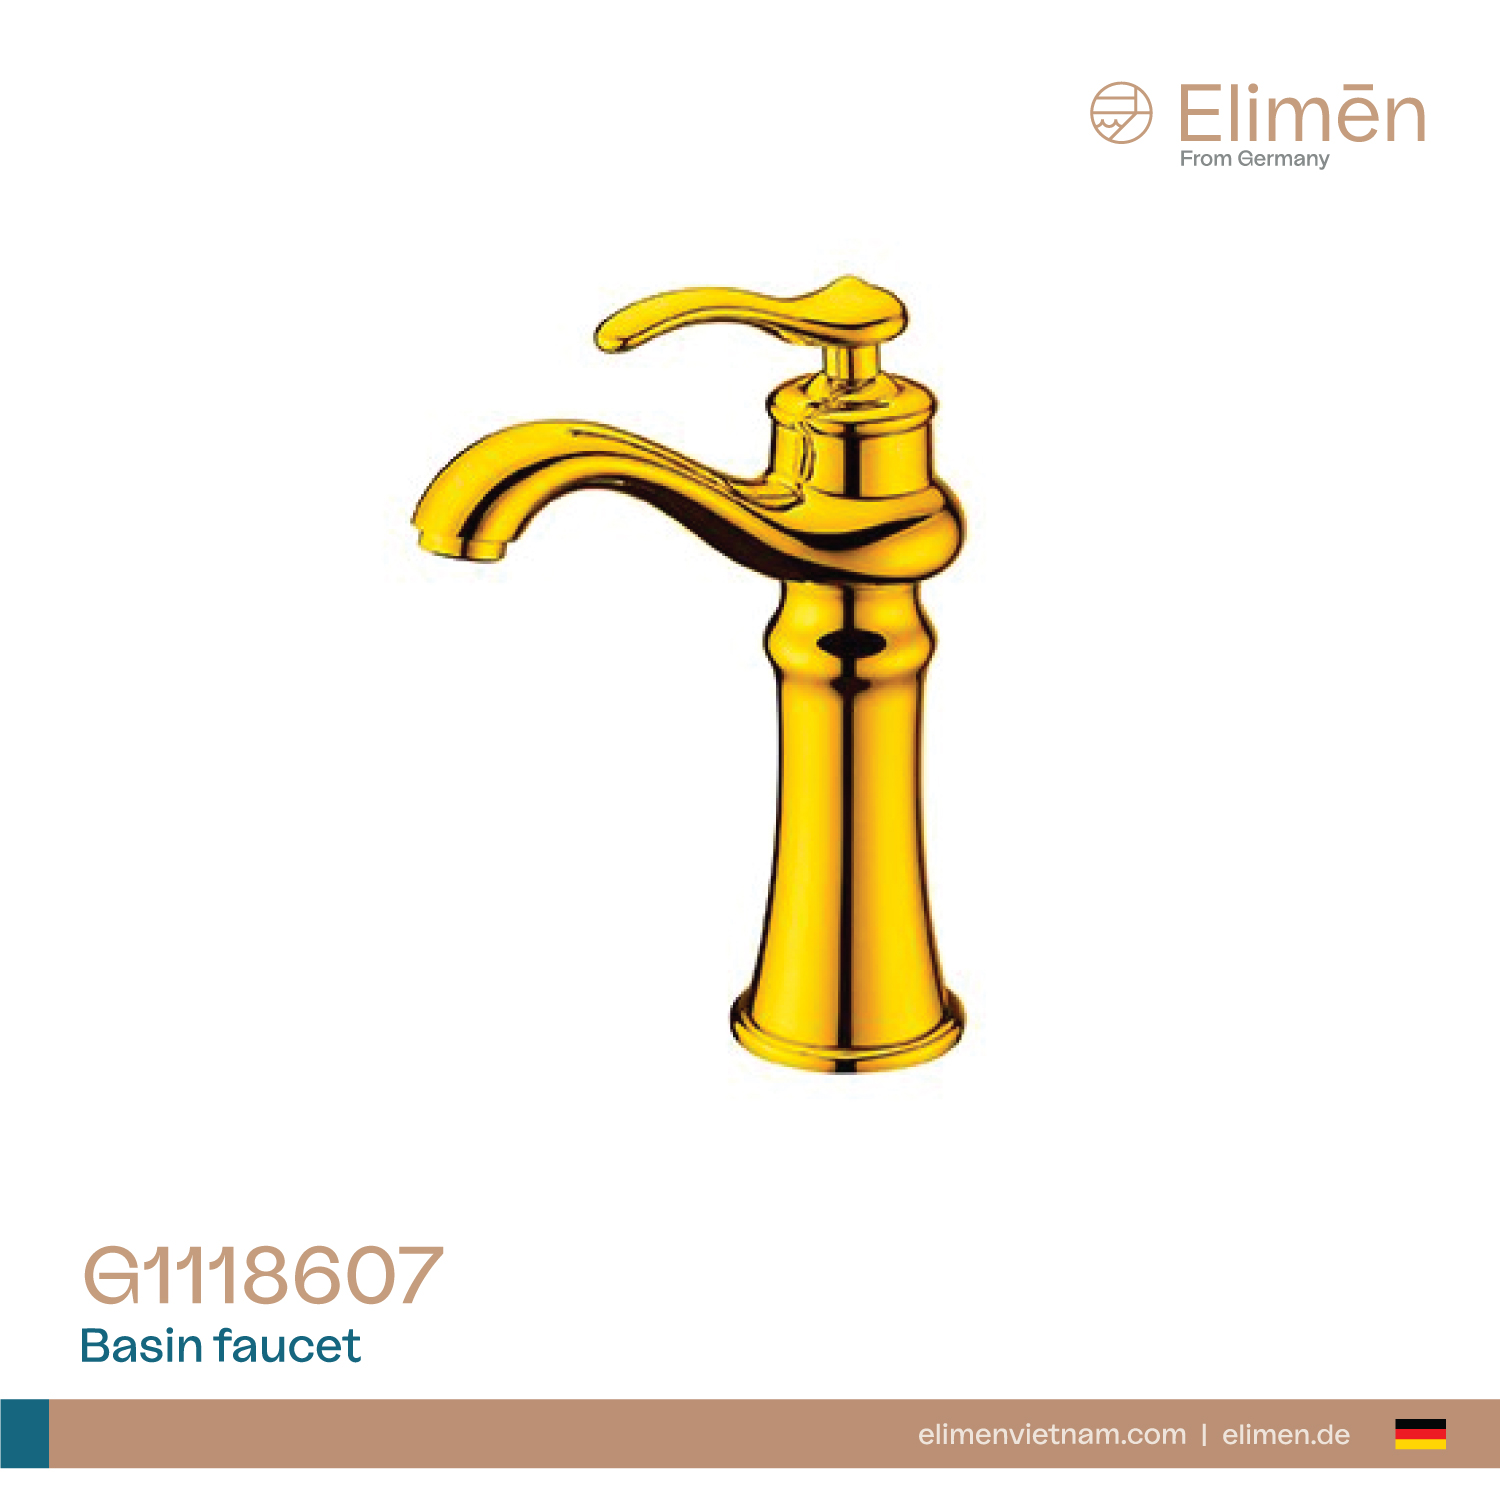 Elimen basin faucet - Code G1118607